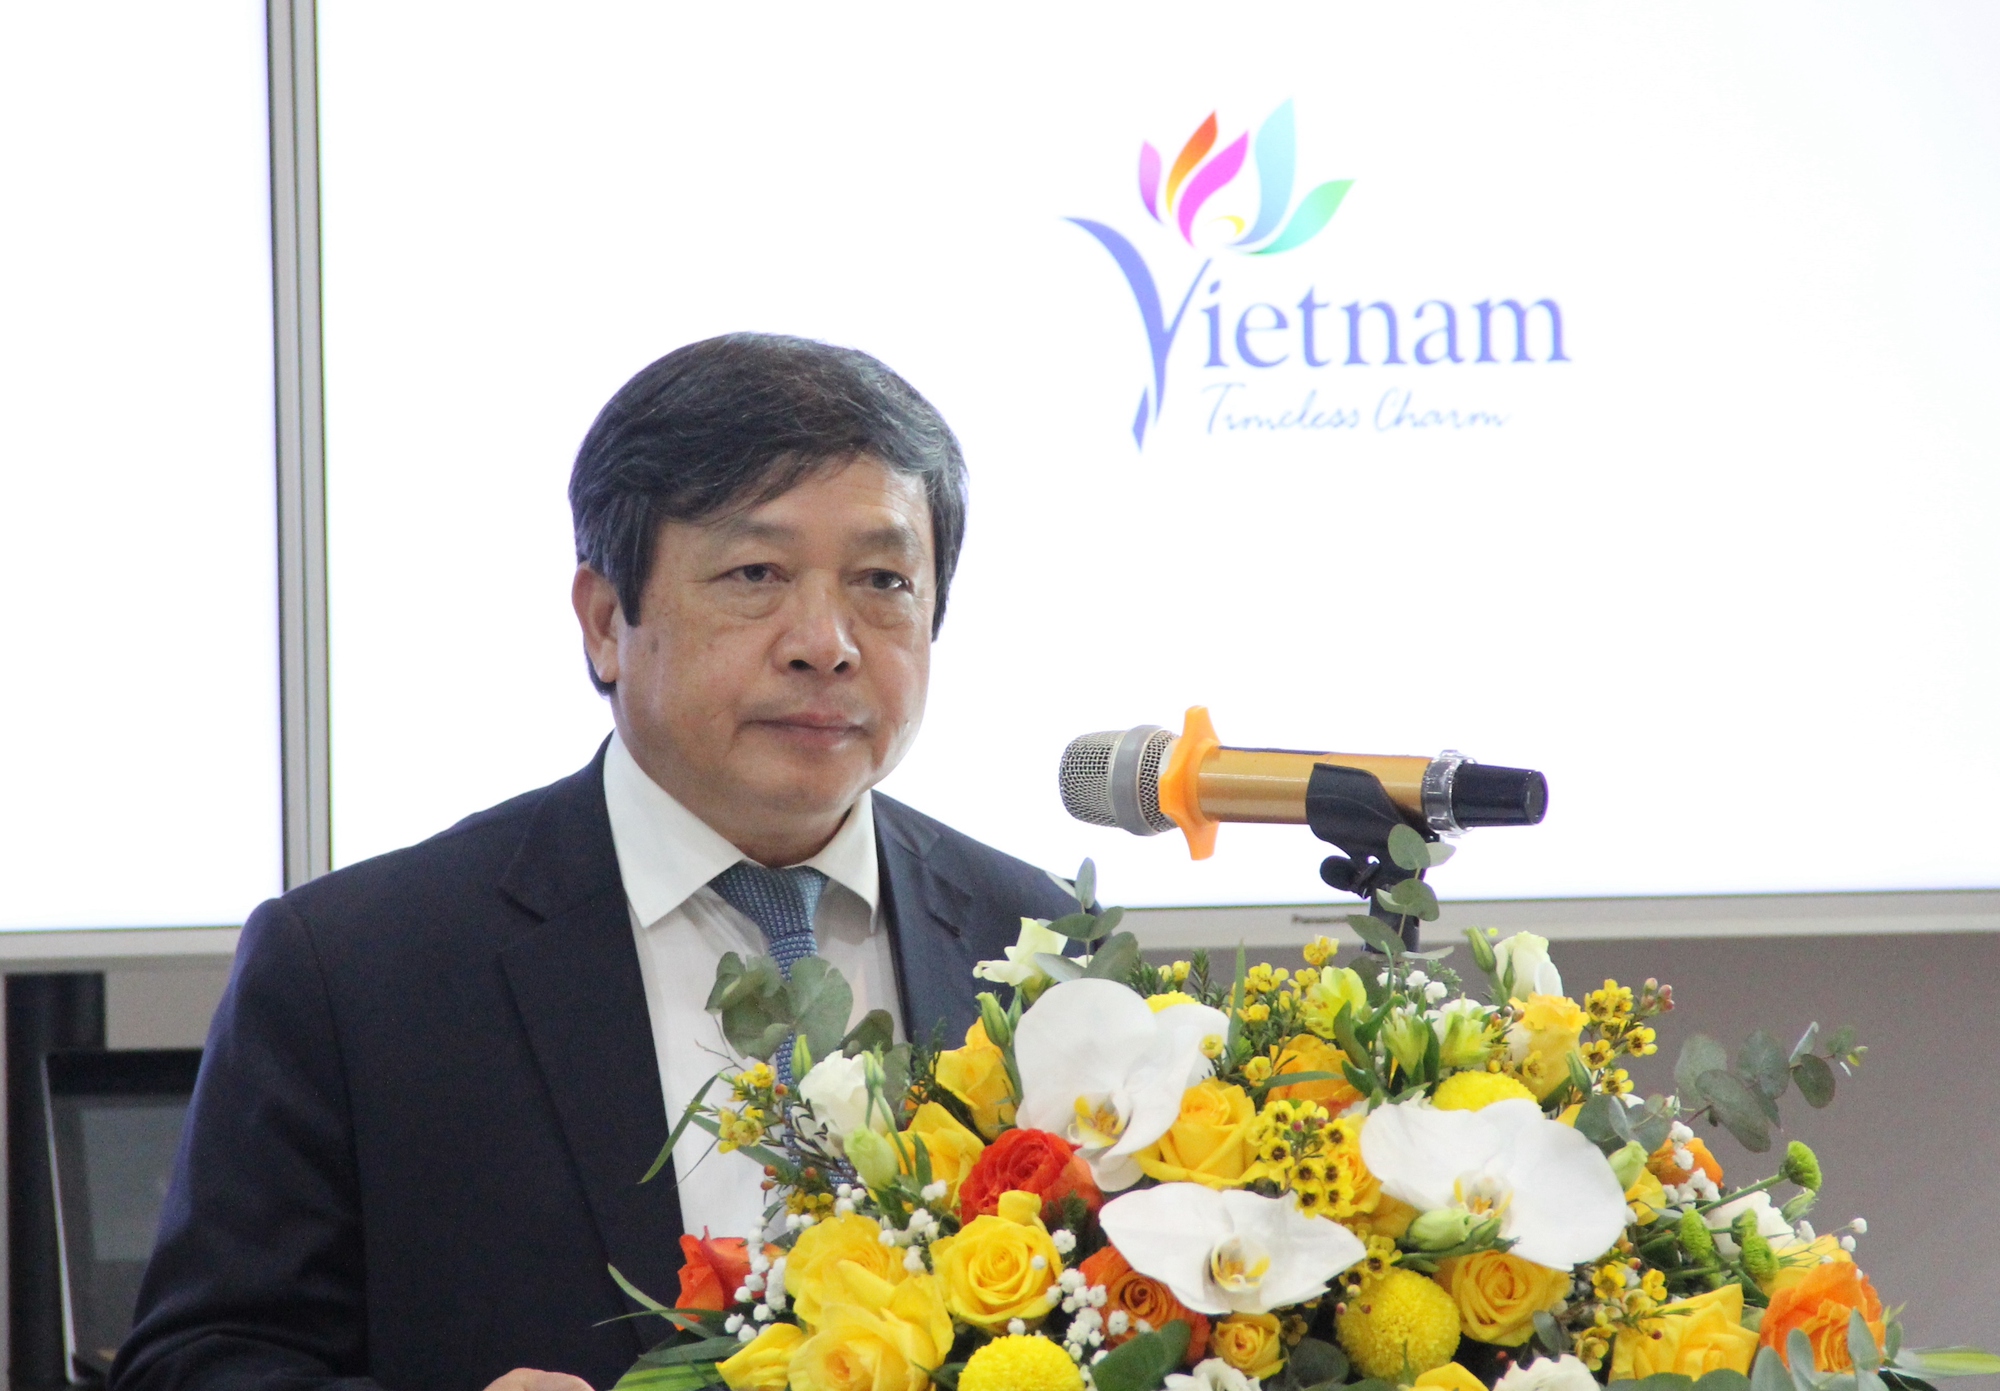 Đẩy mạnh hợp tác du lịch giữa Việt Nam - Hàn Quốc thông qua thanh toán điện tử